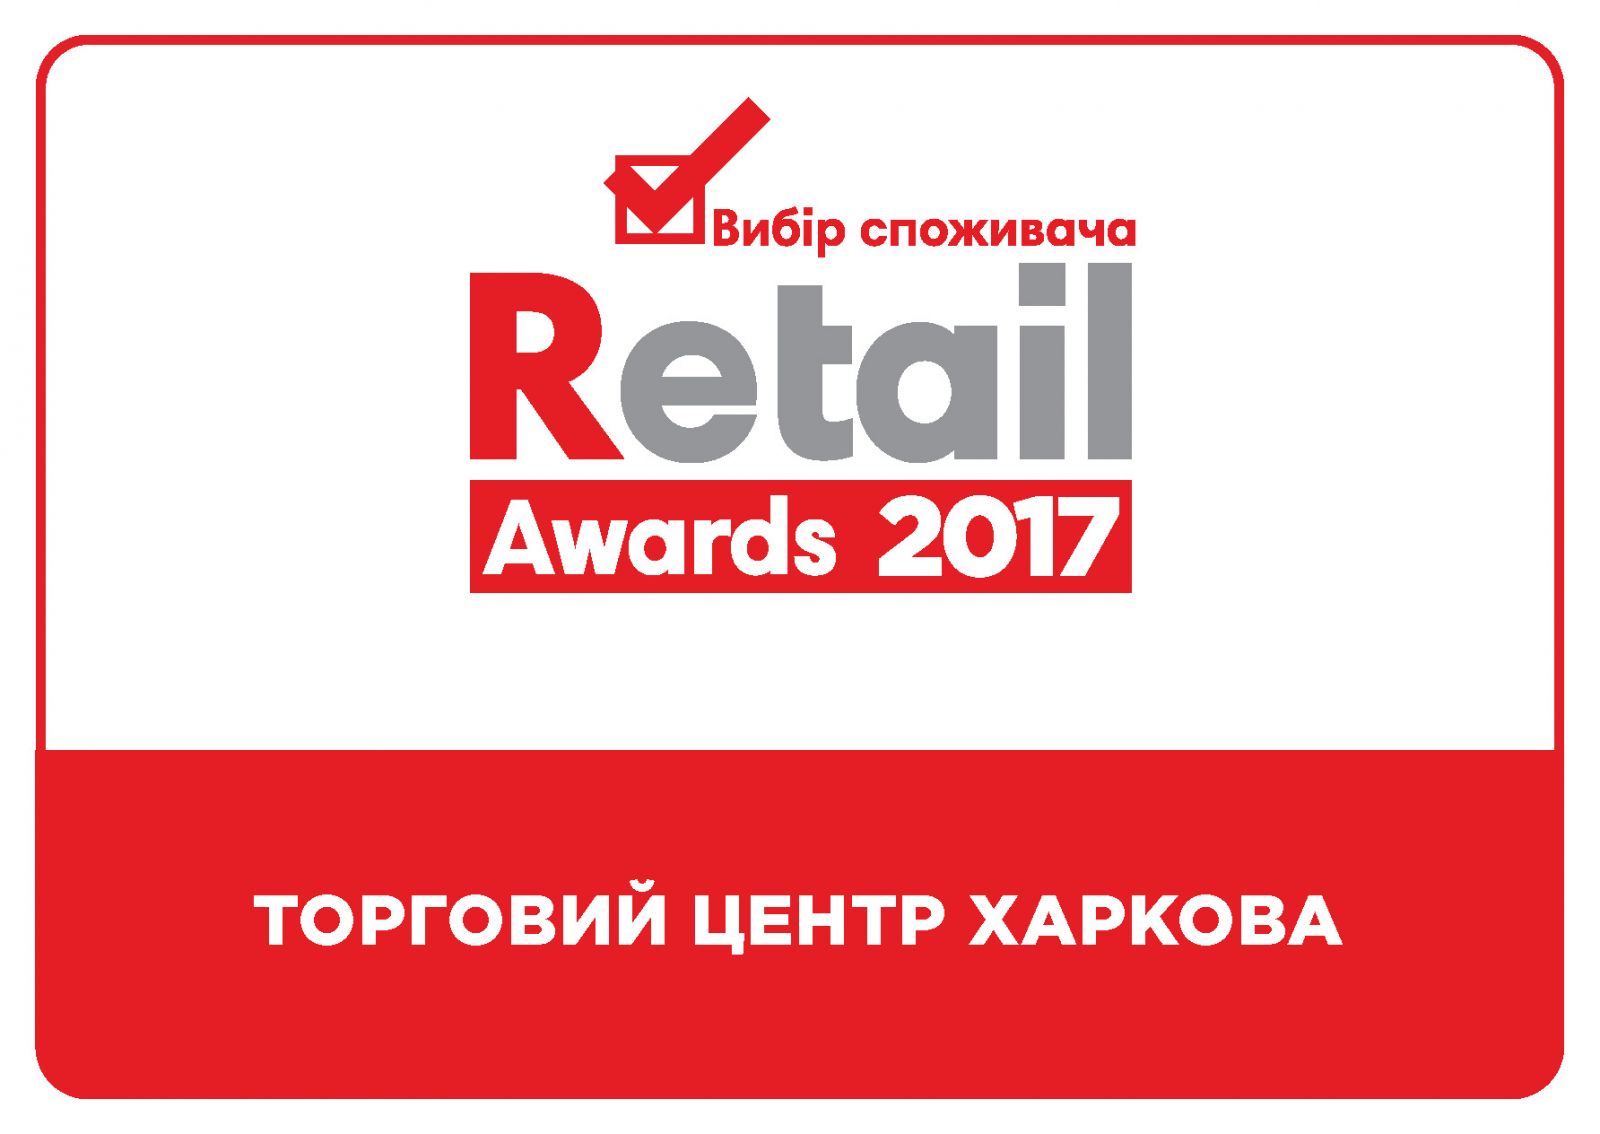 ТРЦ "Караван" названы лучшими торгово-развлекательными центрами Харькова и Днепра